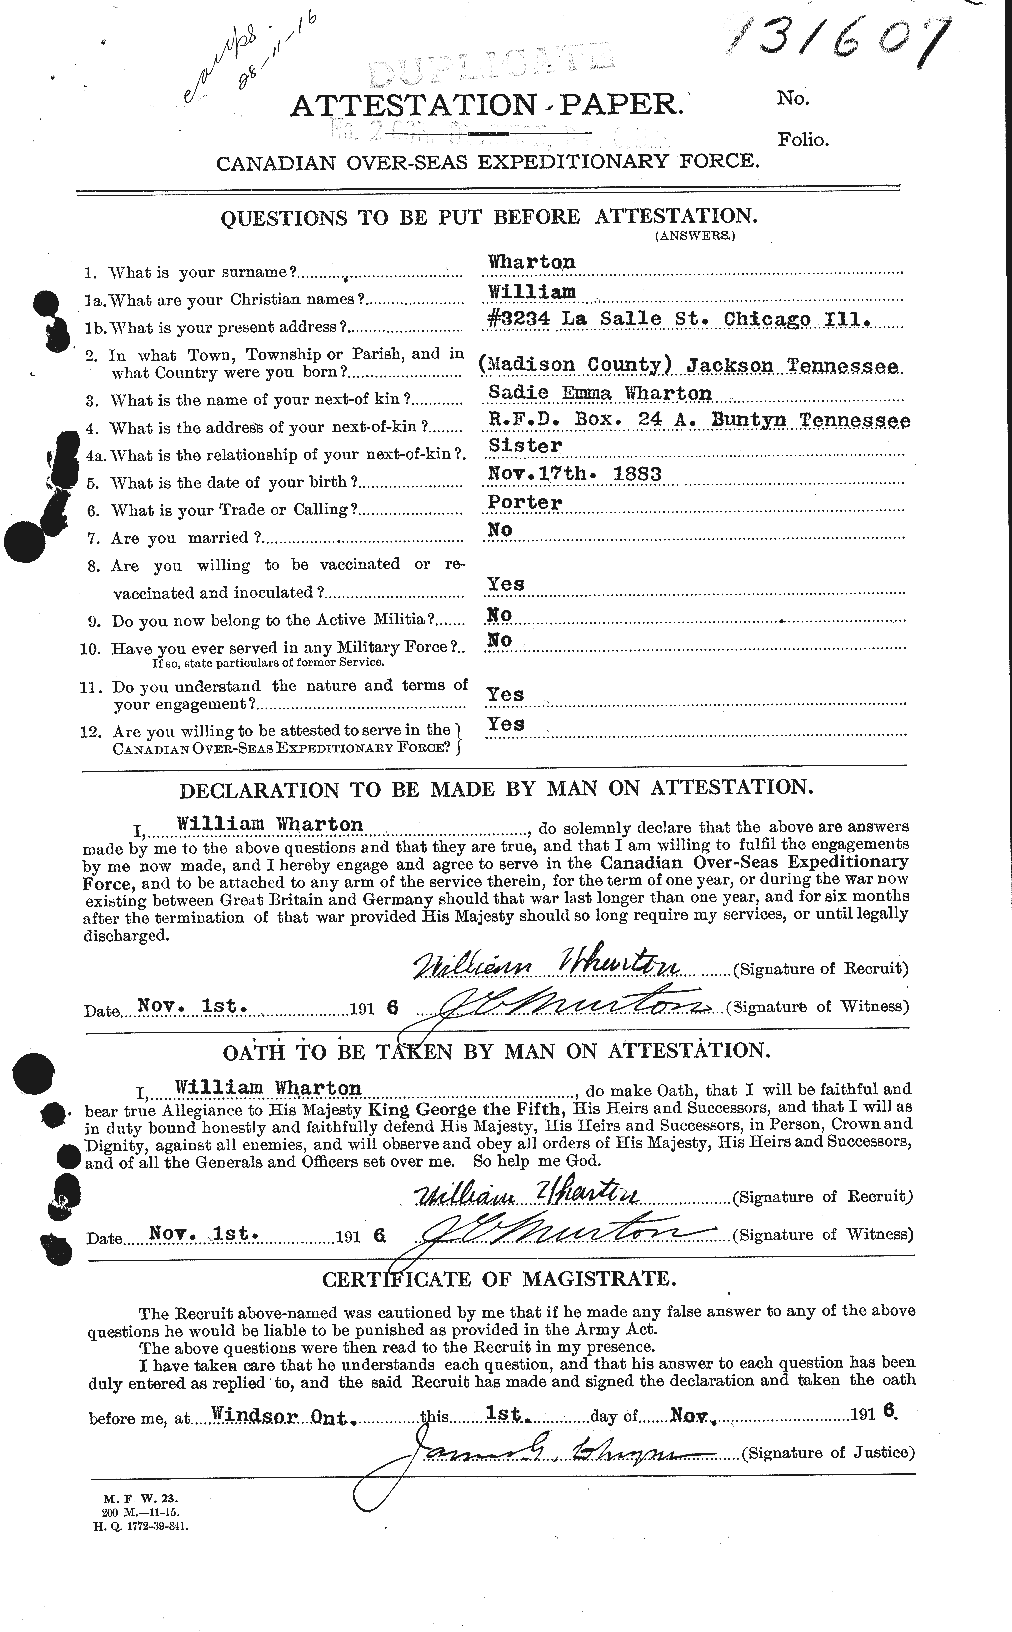 Dossiers du Personnel de la Première Guerre mondiale - CEC 668250a